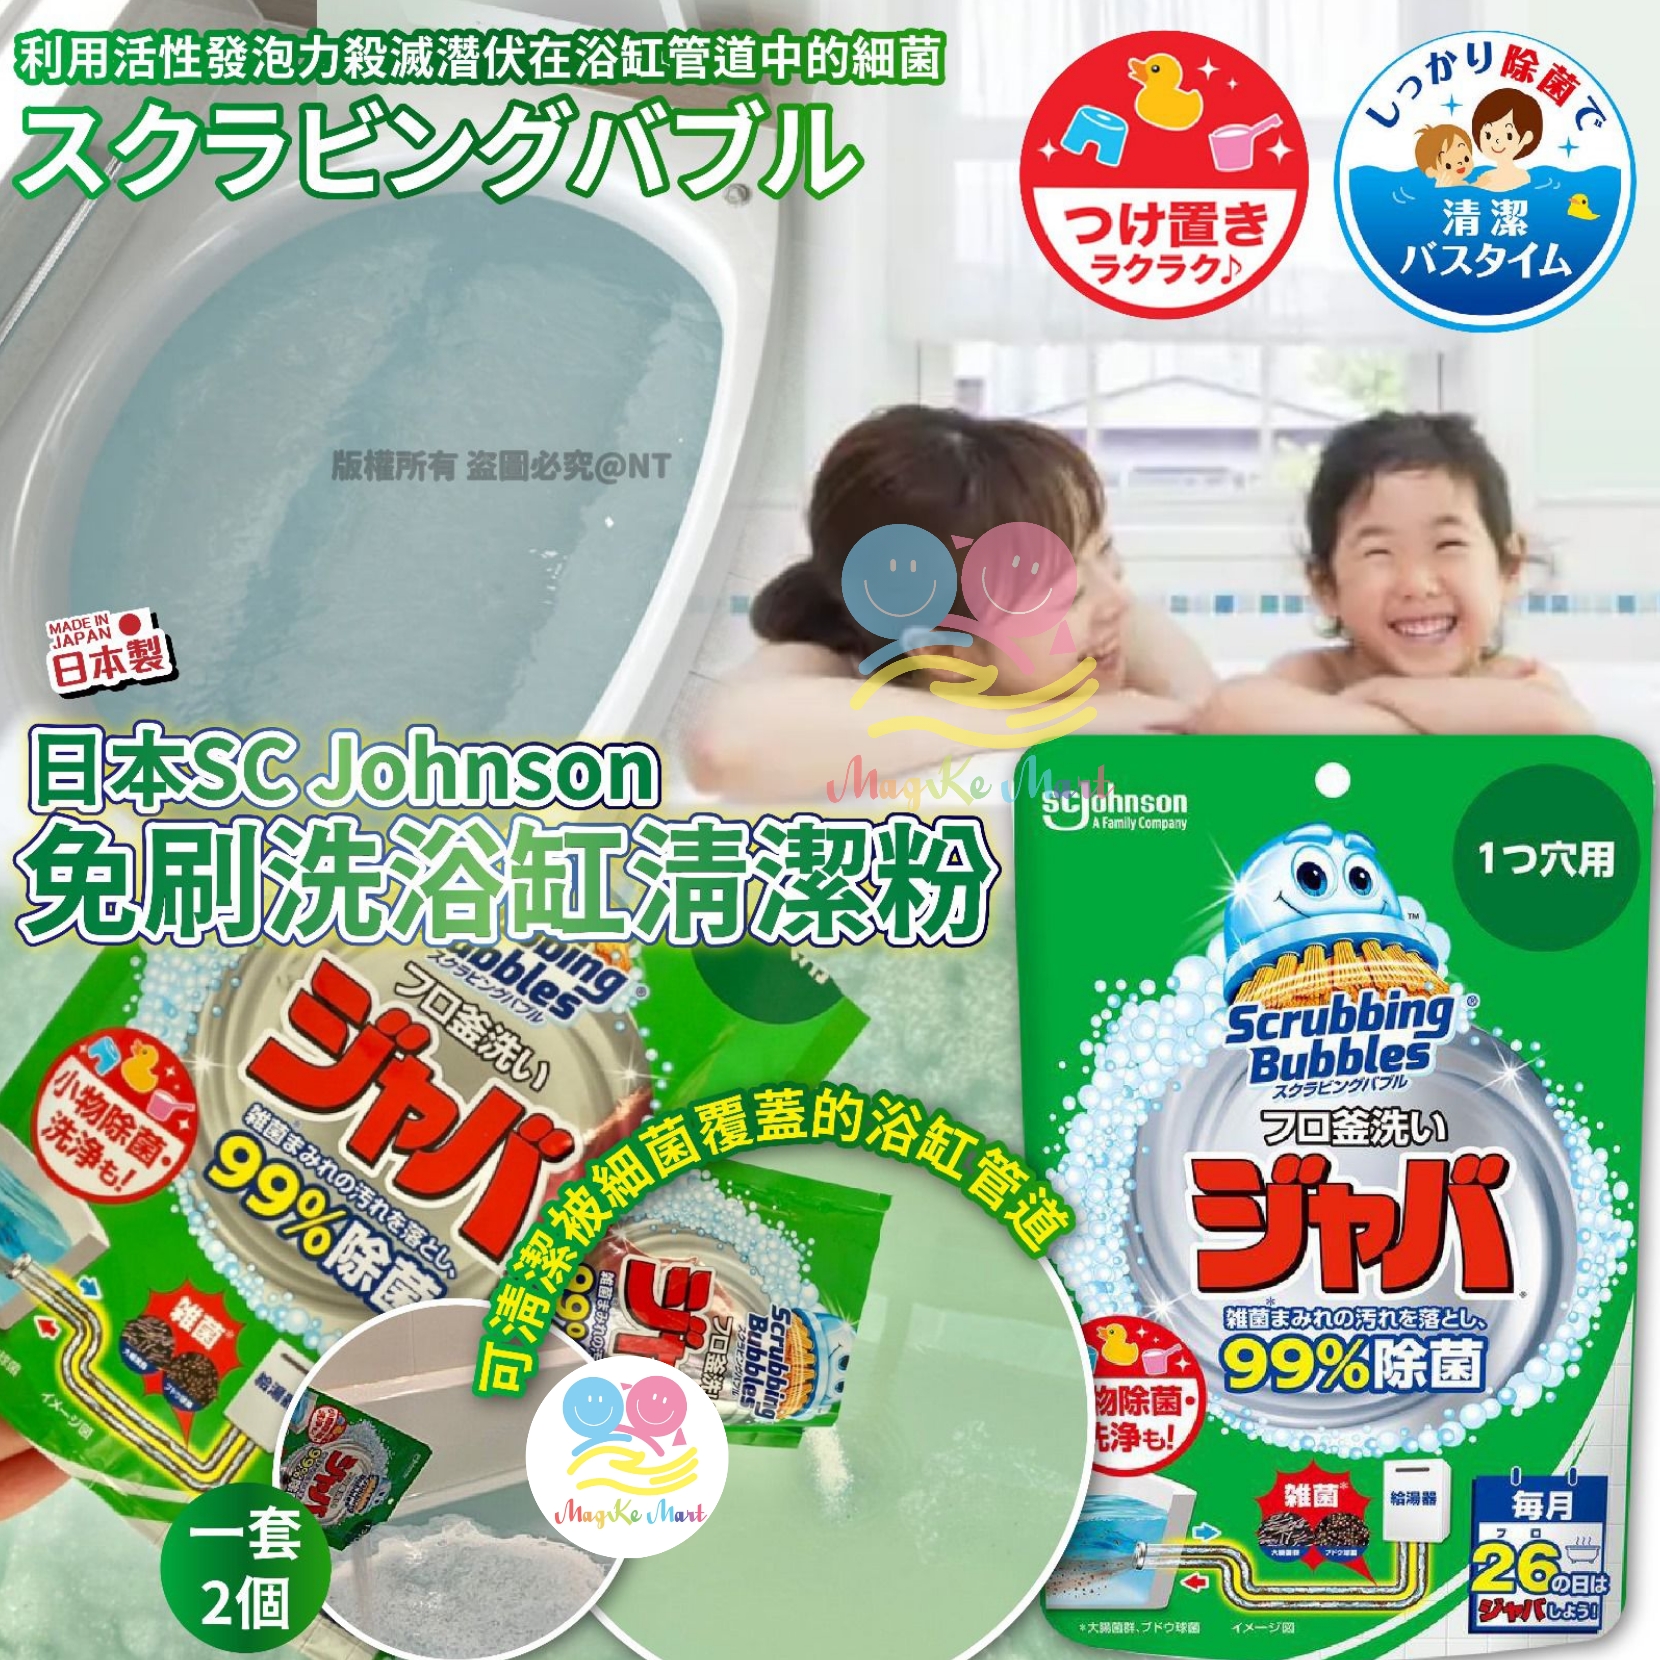 日本 SC Johnson 免刷洗浴缸清潔粉 160g (1套2包)